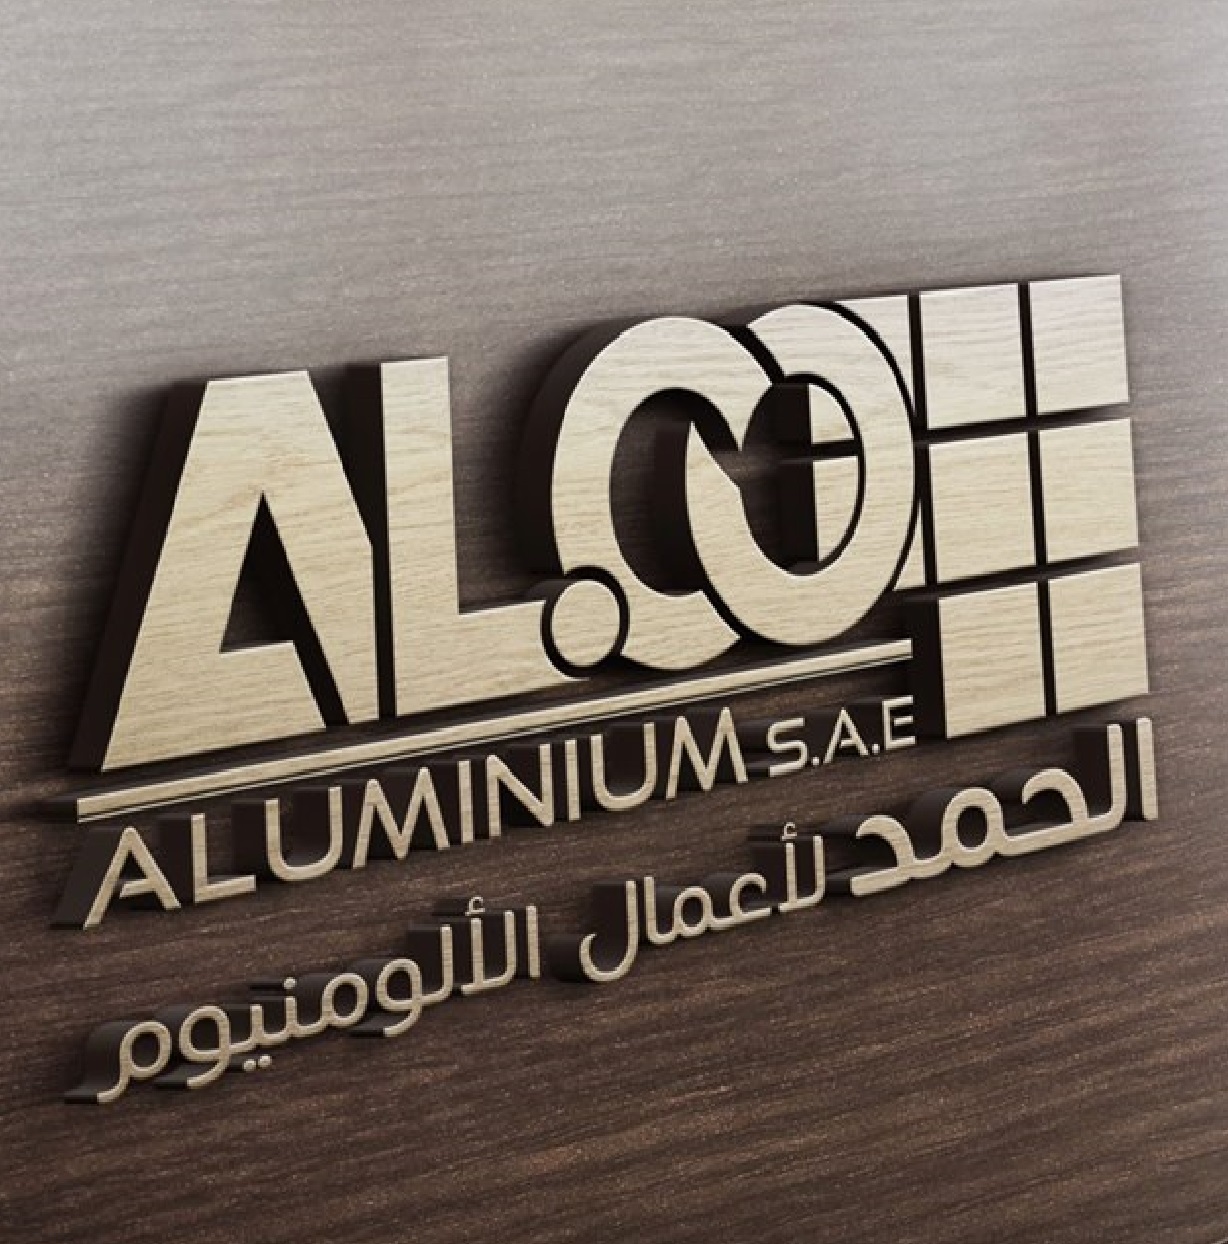 Alco Egypt factory